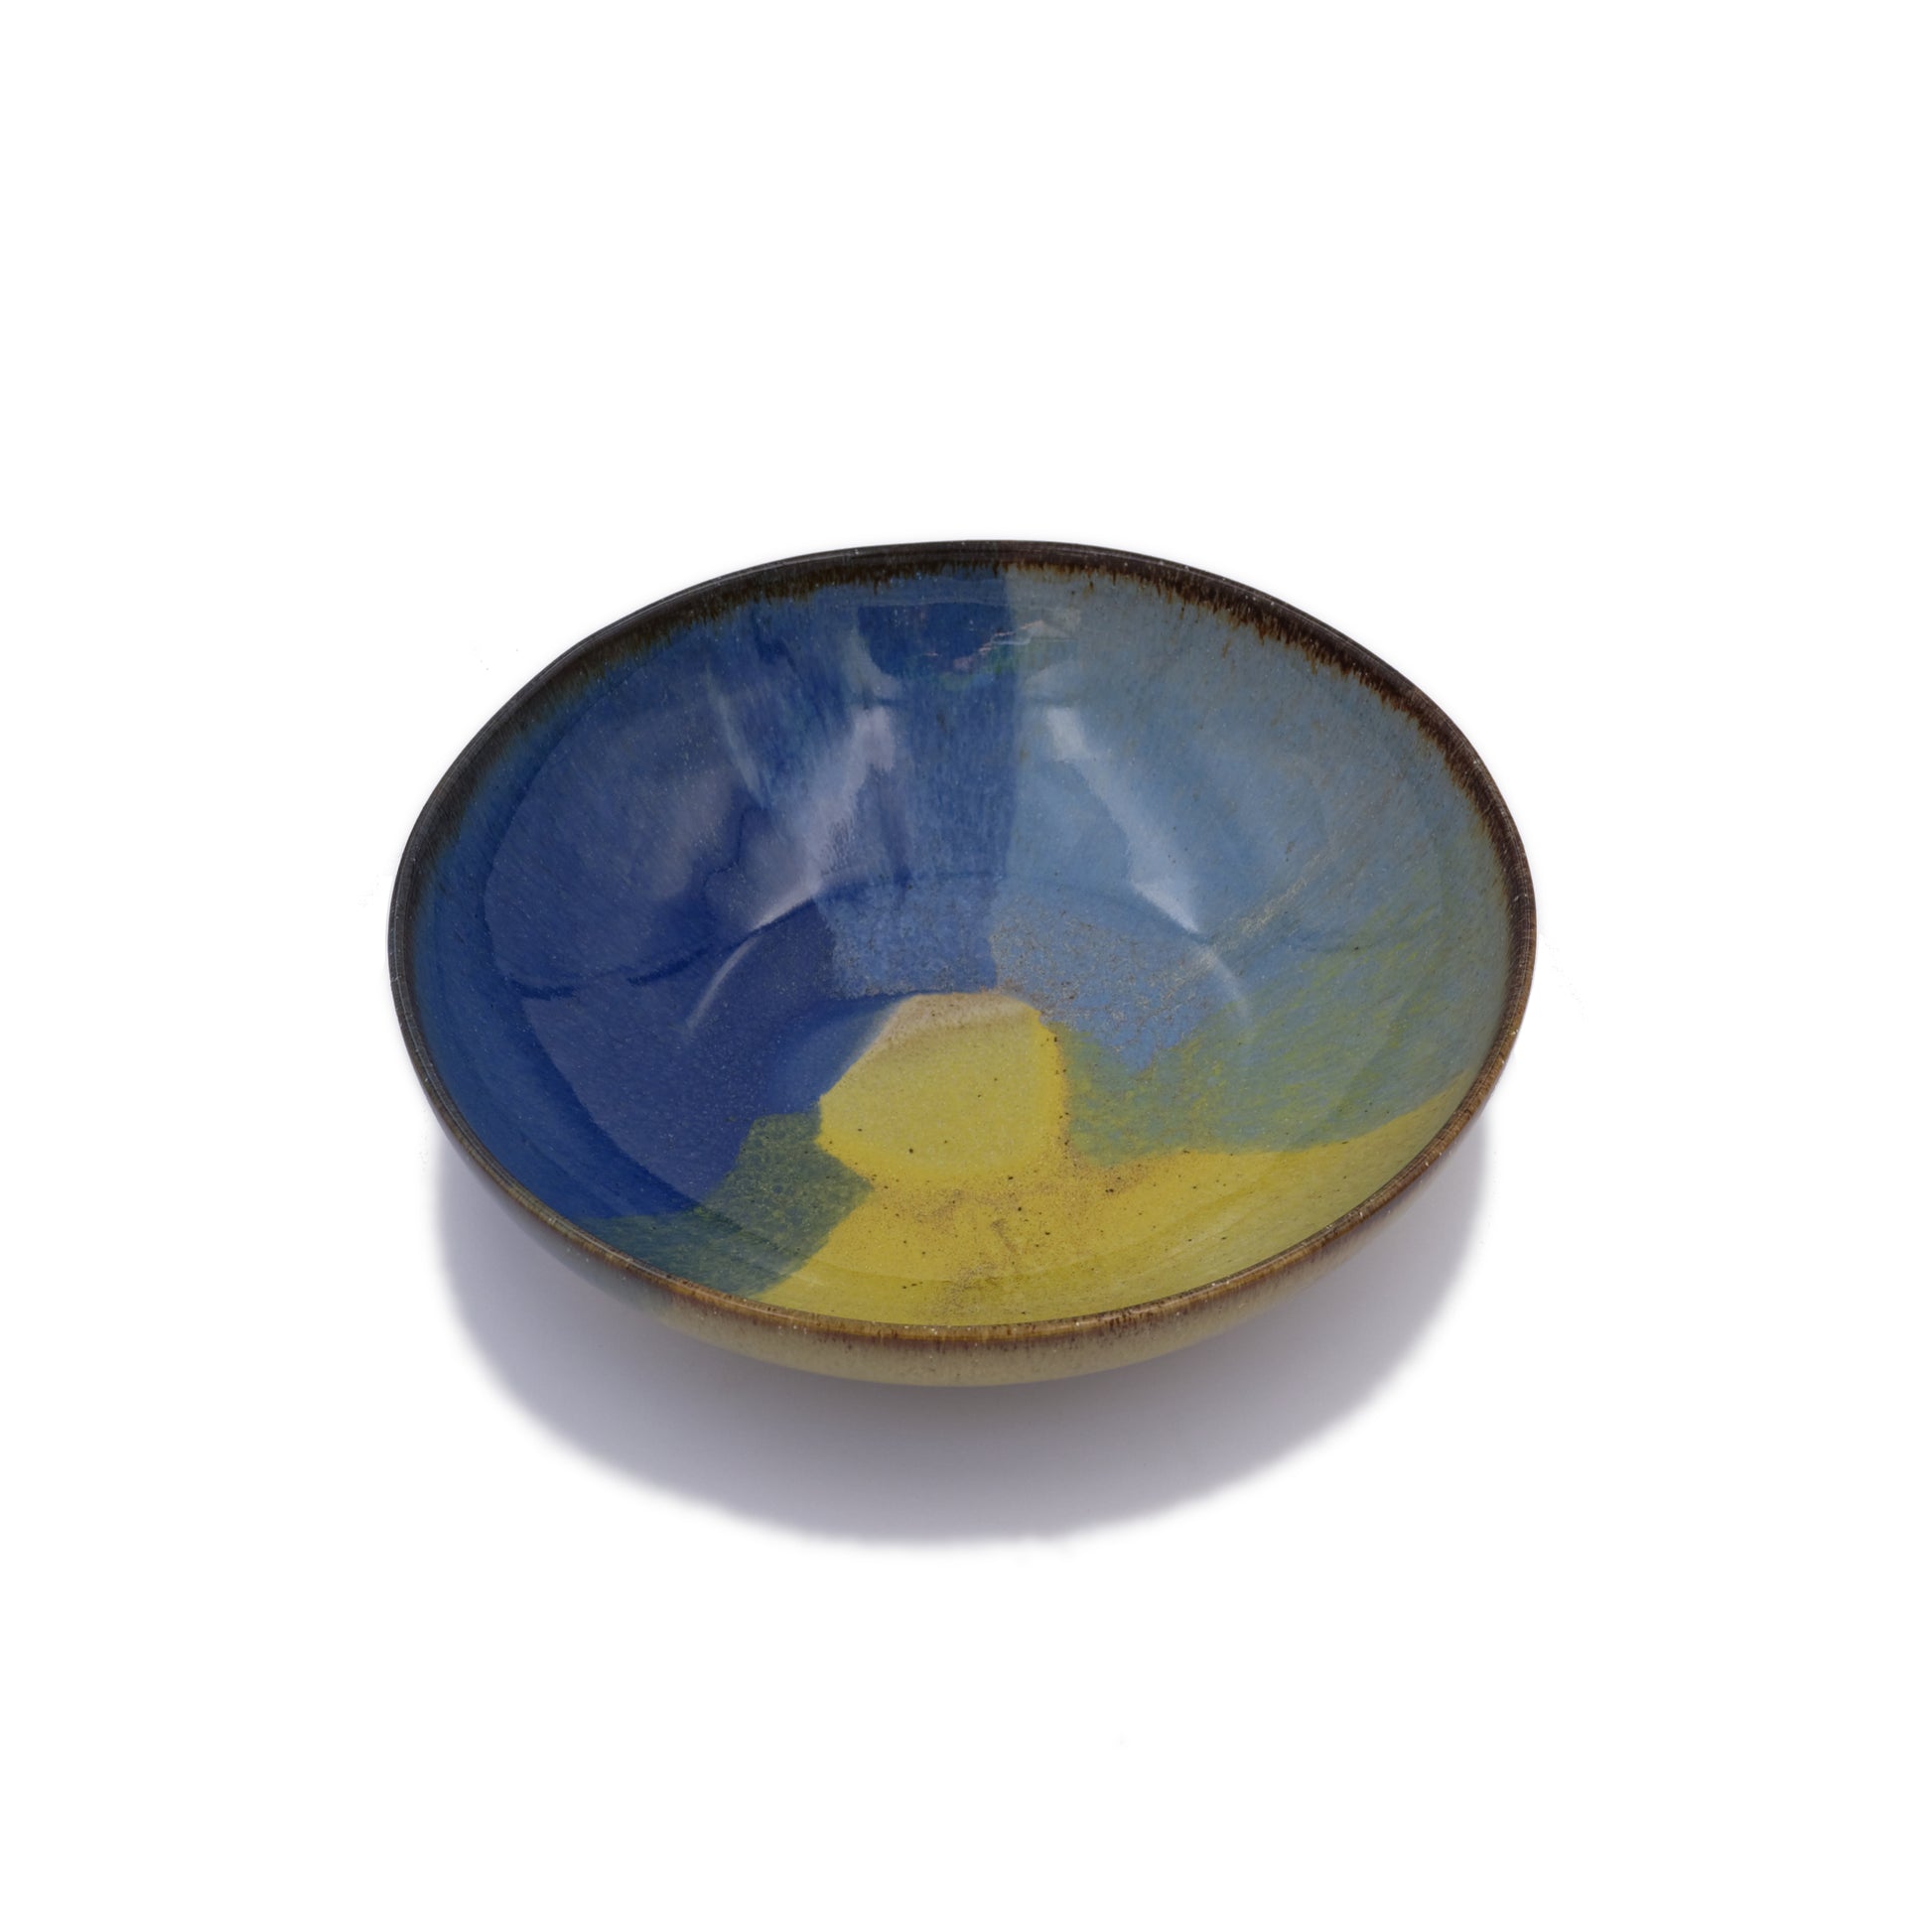 vue en biais, assiette creuse en grès naturel avec motif tricolore bleu profond, bleu ciel et jaune